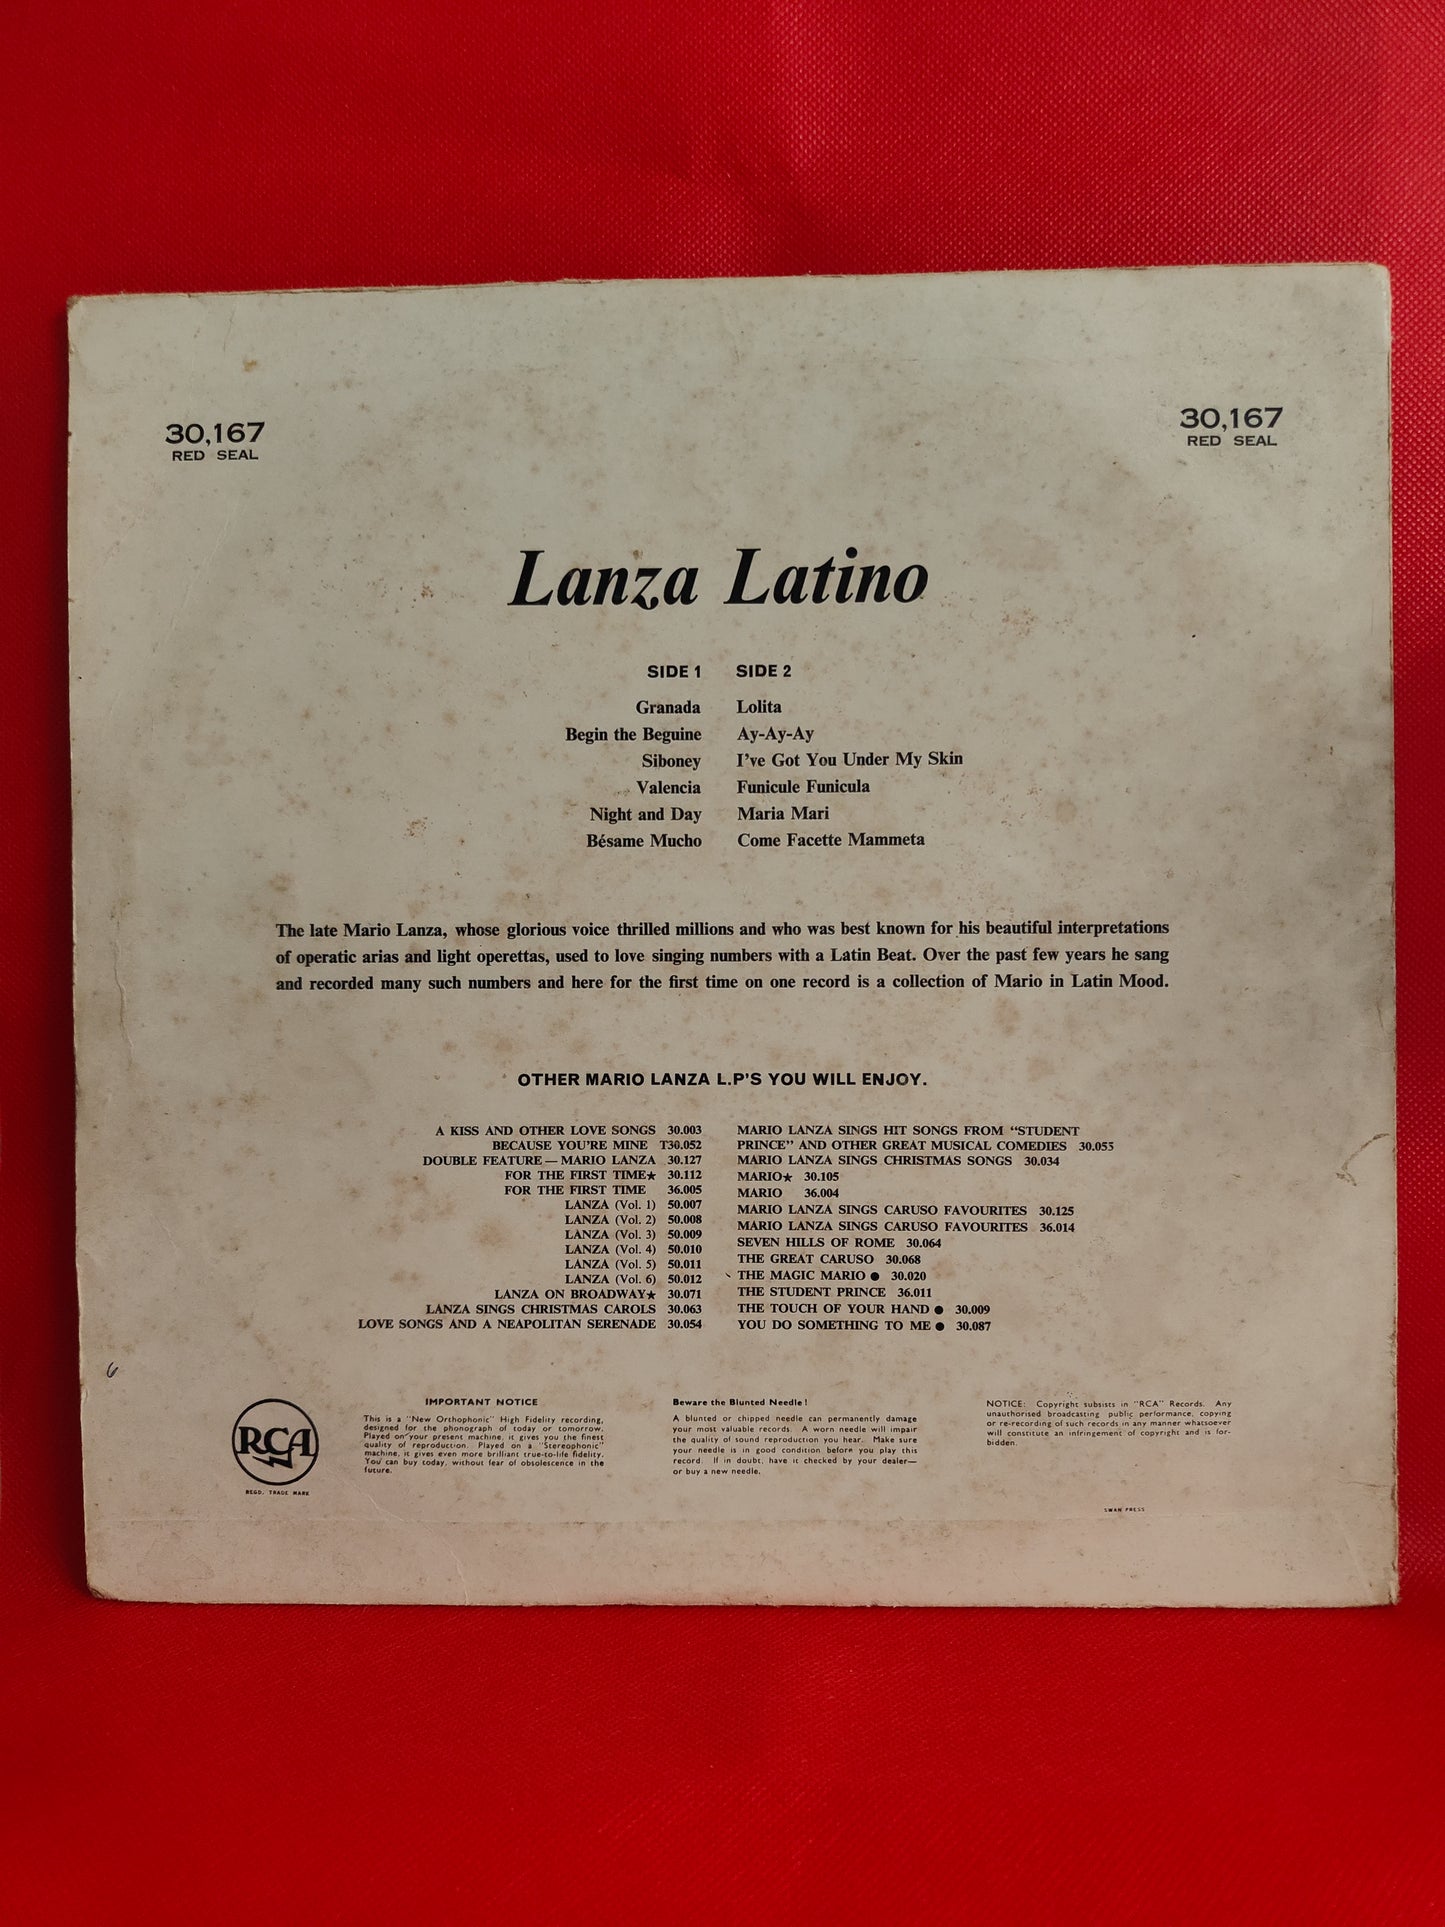 Lanza Latino